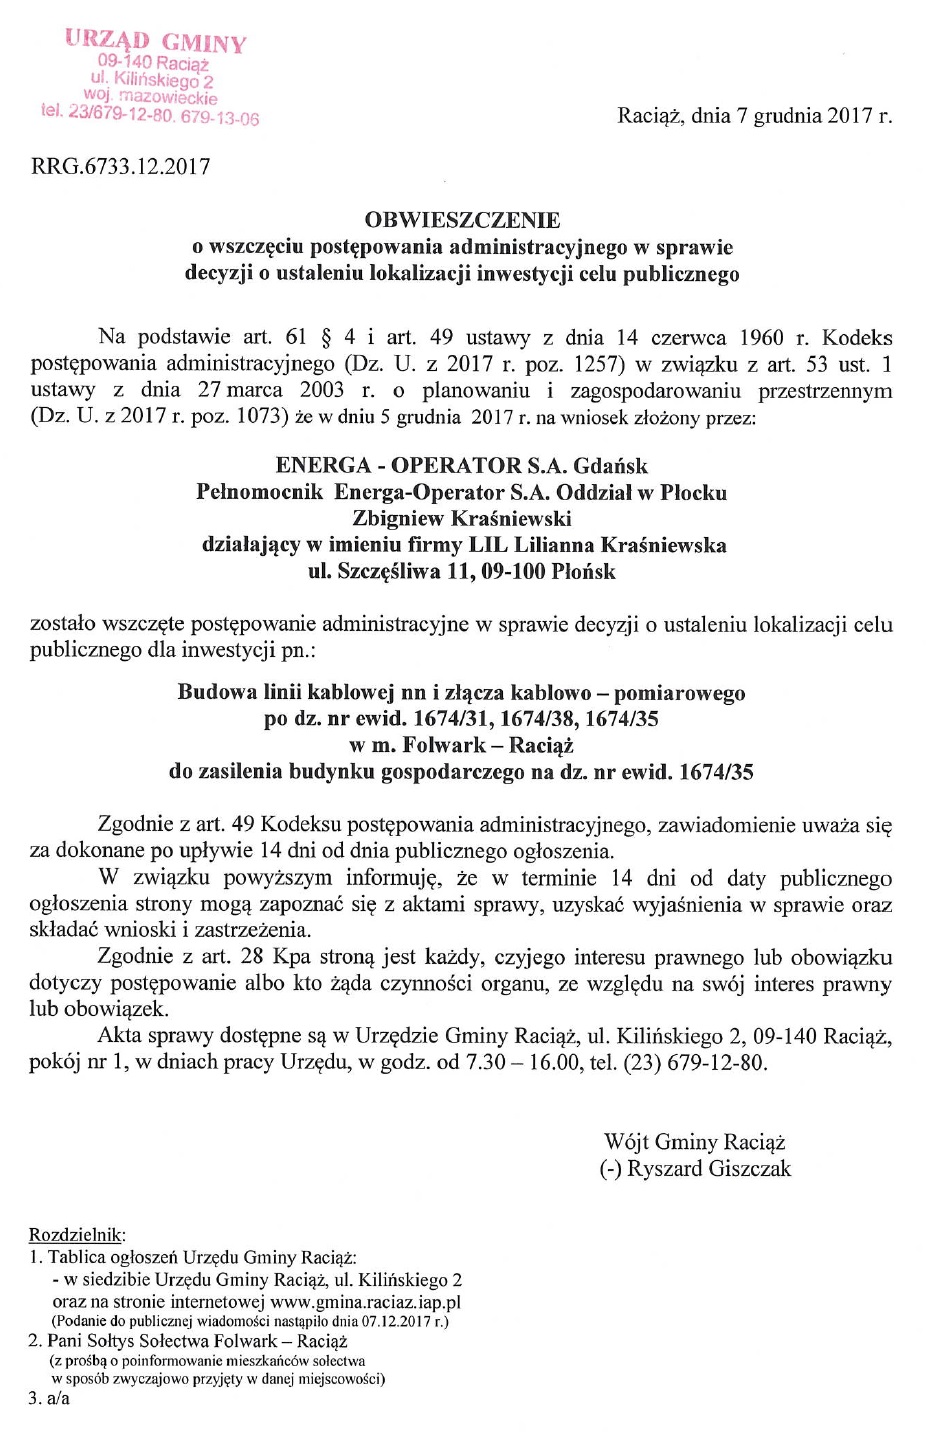 Obwieszczenie - Budowa linii kablowej nn i złącza kablowo-pomiarowego po dz. nr ewid. 1674/31, 1674/38, 1674/35 w m. Folwark-Raciąż.